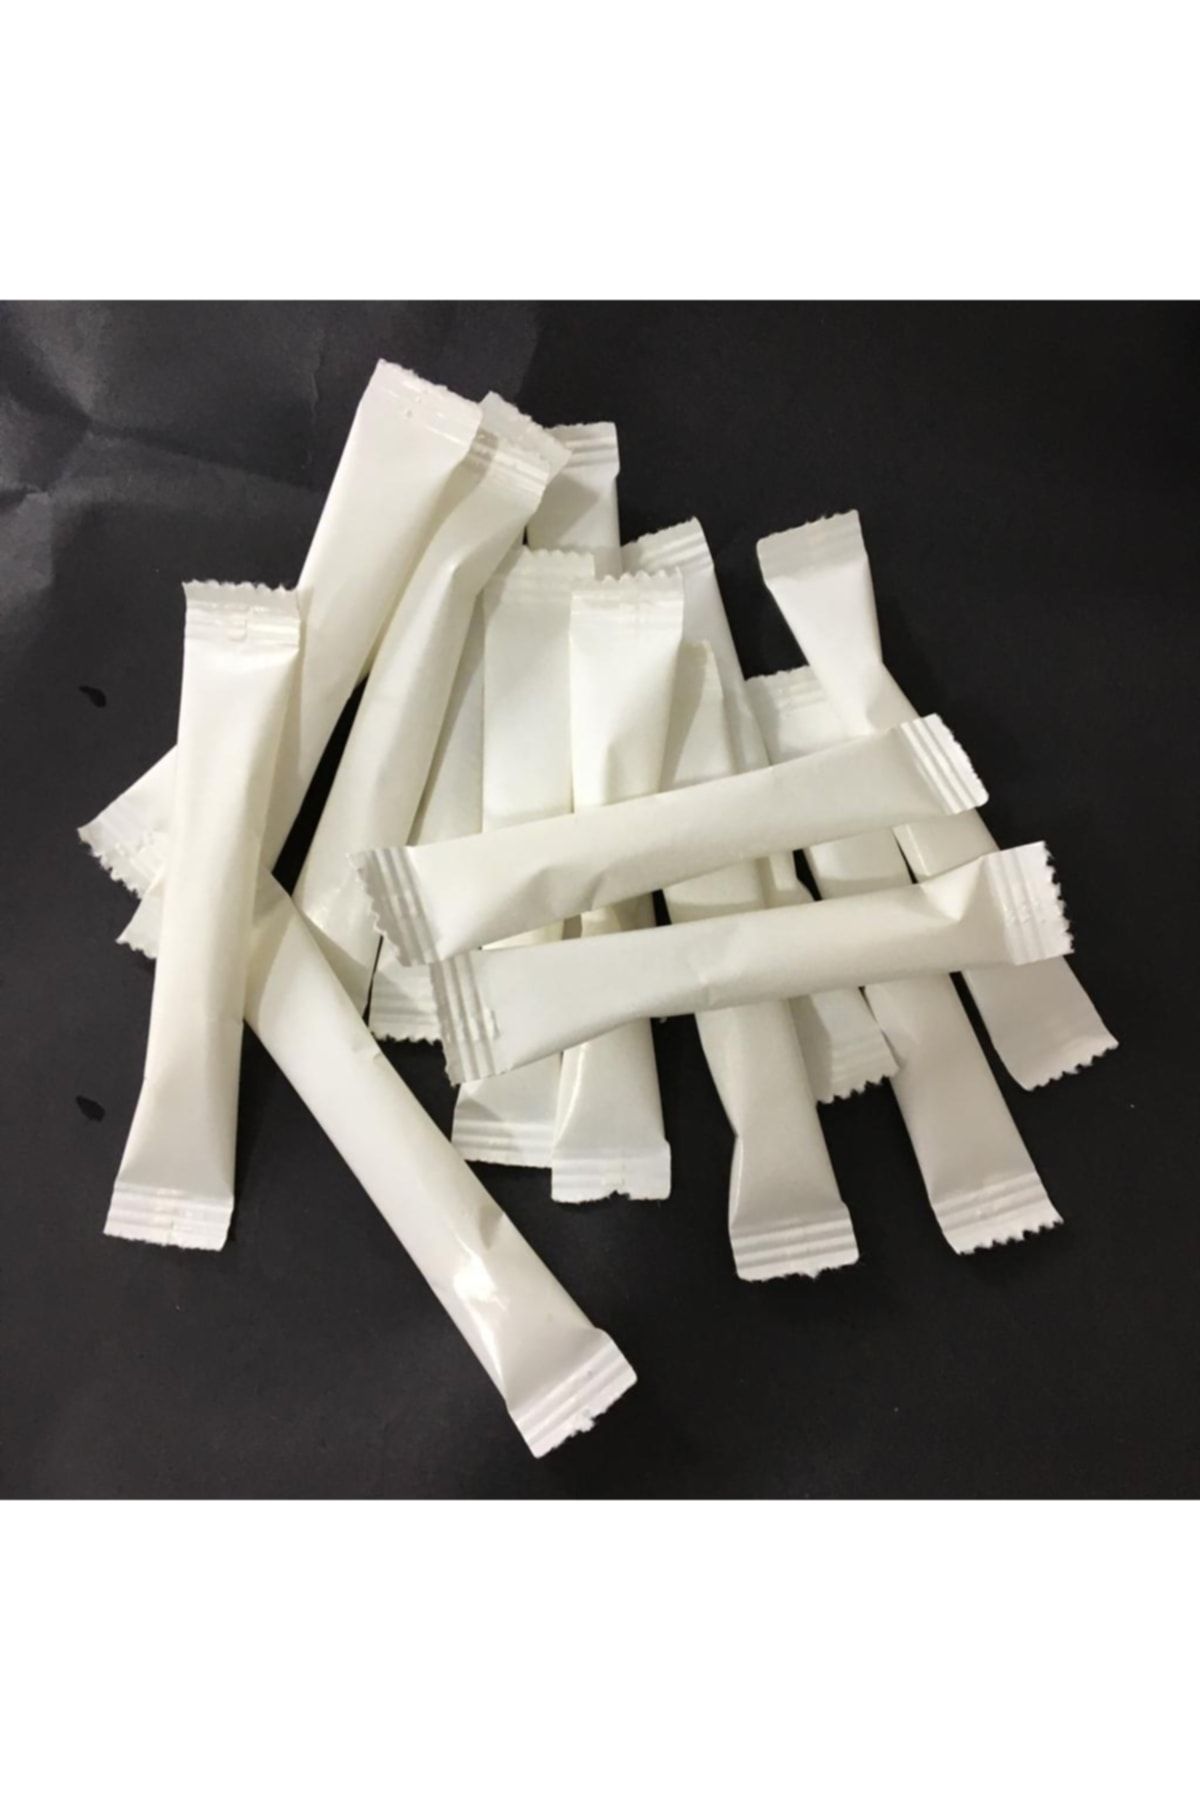 Merpak Ambalaj Stick Şeker Beyaz Baskısız Toz Şeker 3 gr X 1000'li